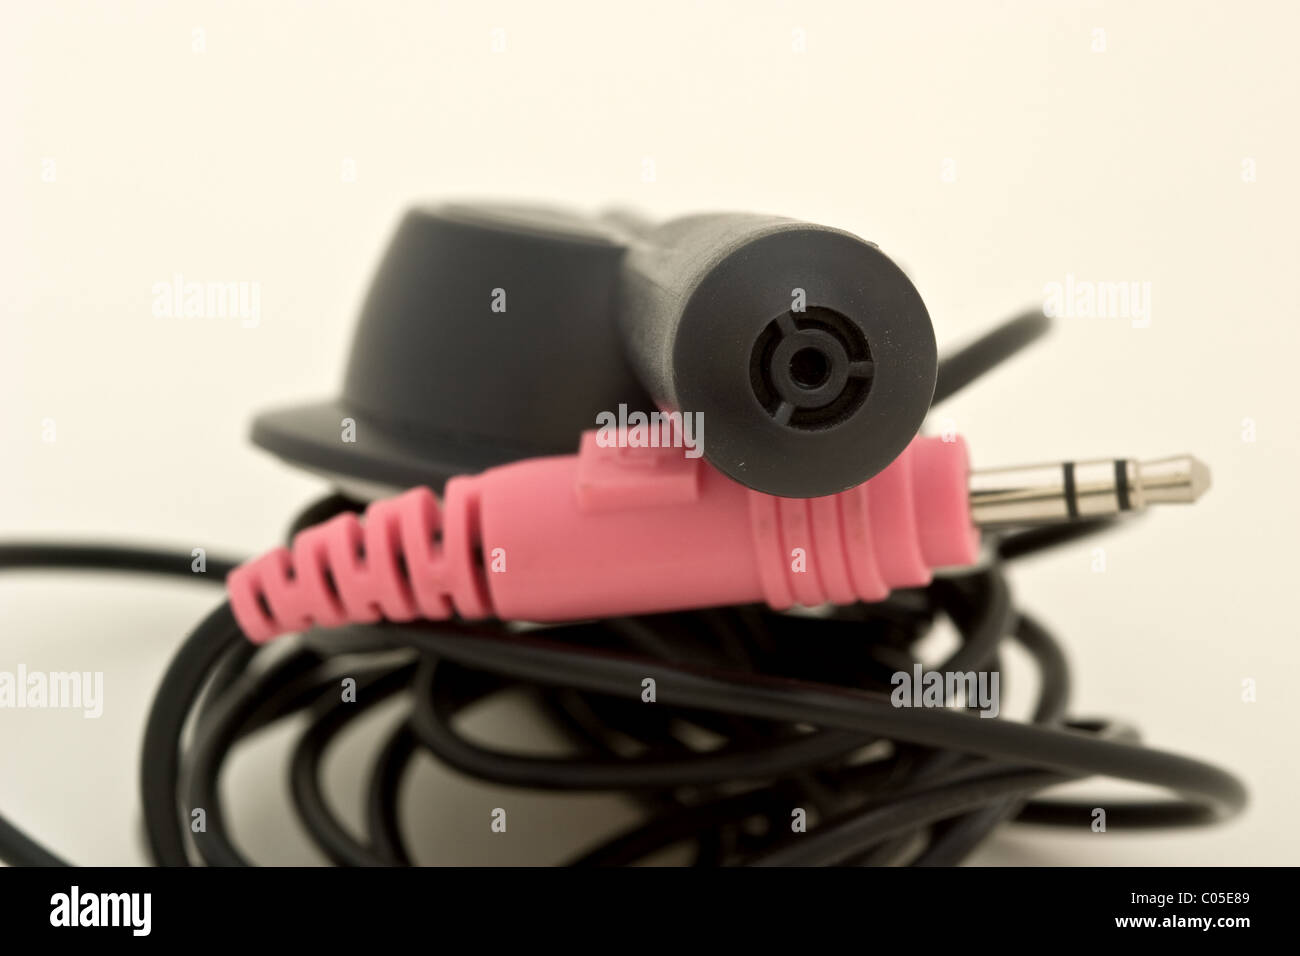 Conectores de audio y vídeo de metal rosa con un micrófono en la parte superior Foto de stock